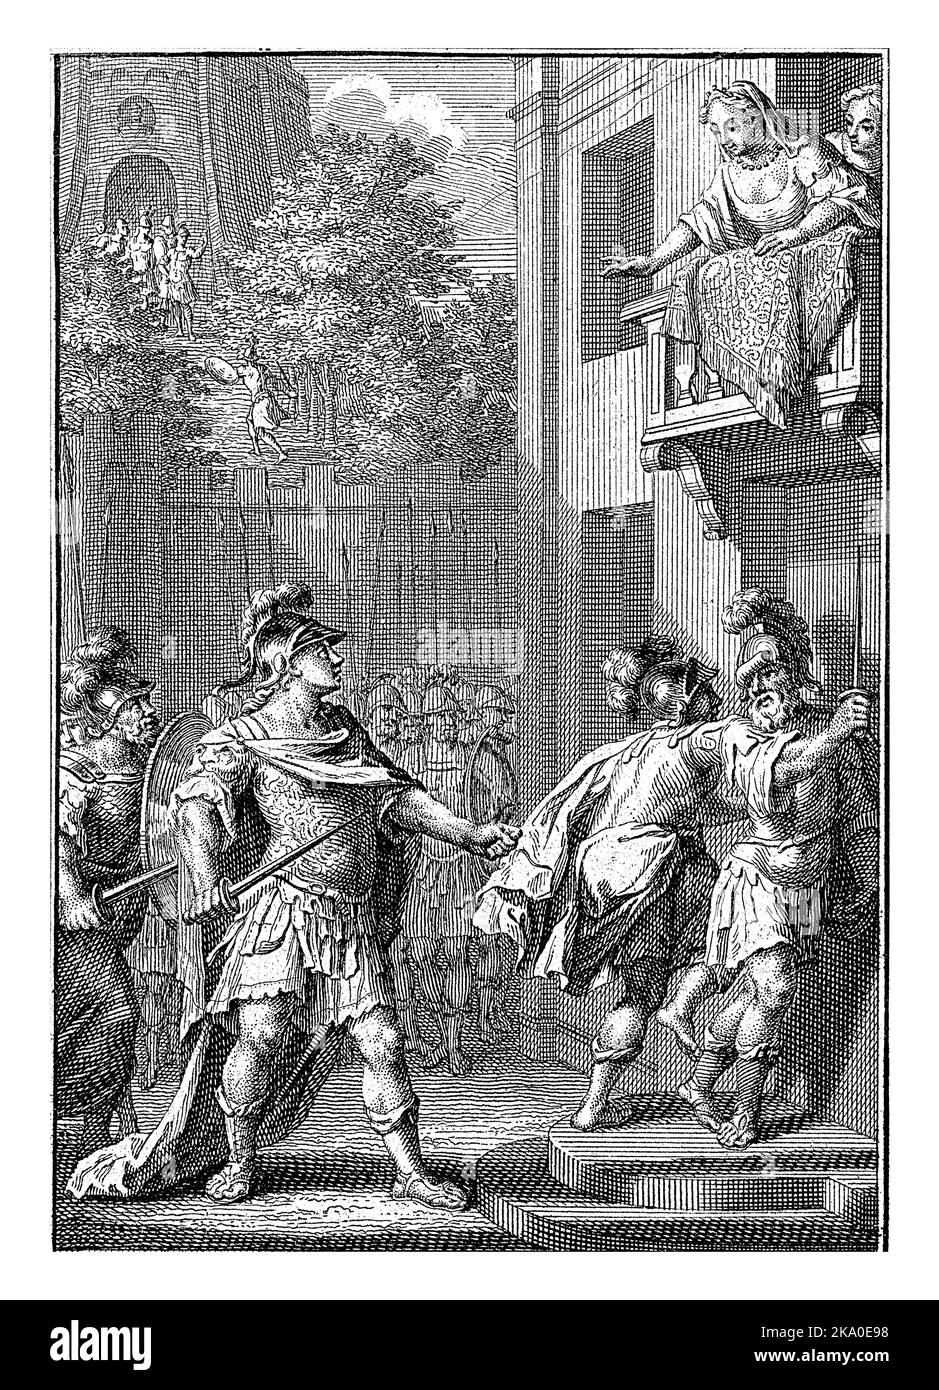 Il generale Agrippa guarda una donna in piedi sul balcone. I soldati cercano di entrare nella sua casa attraverso la porta. Foto Stock